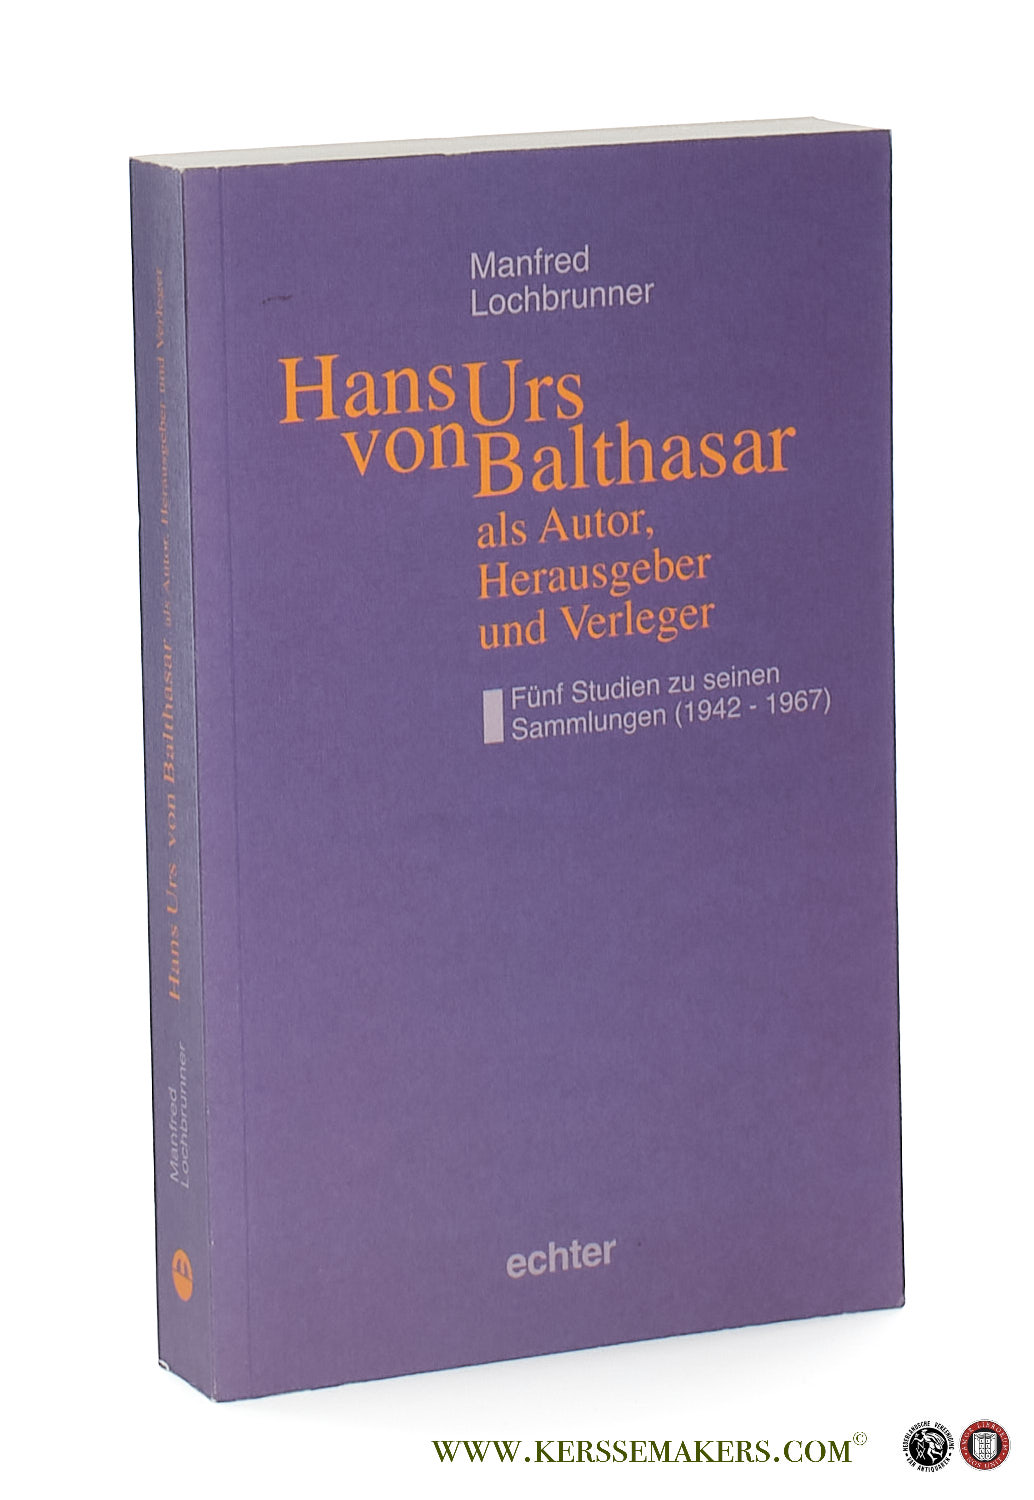 Hans Urs von Balthasar als Autor, Herausgeber und Verleger. Fünf Studien zu seinen Sammlungen (1942-1967). - Lochbrunner, Manfred.